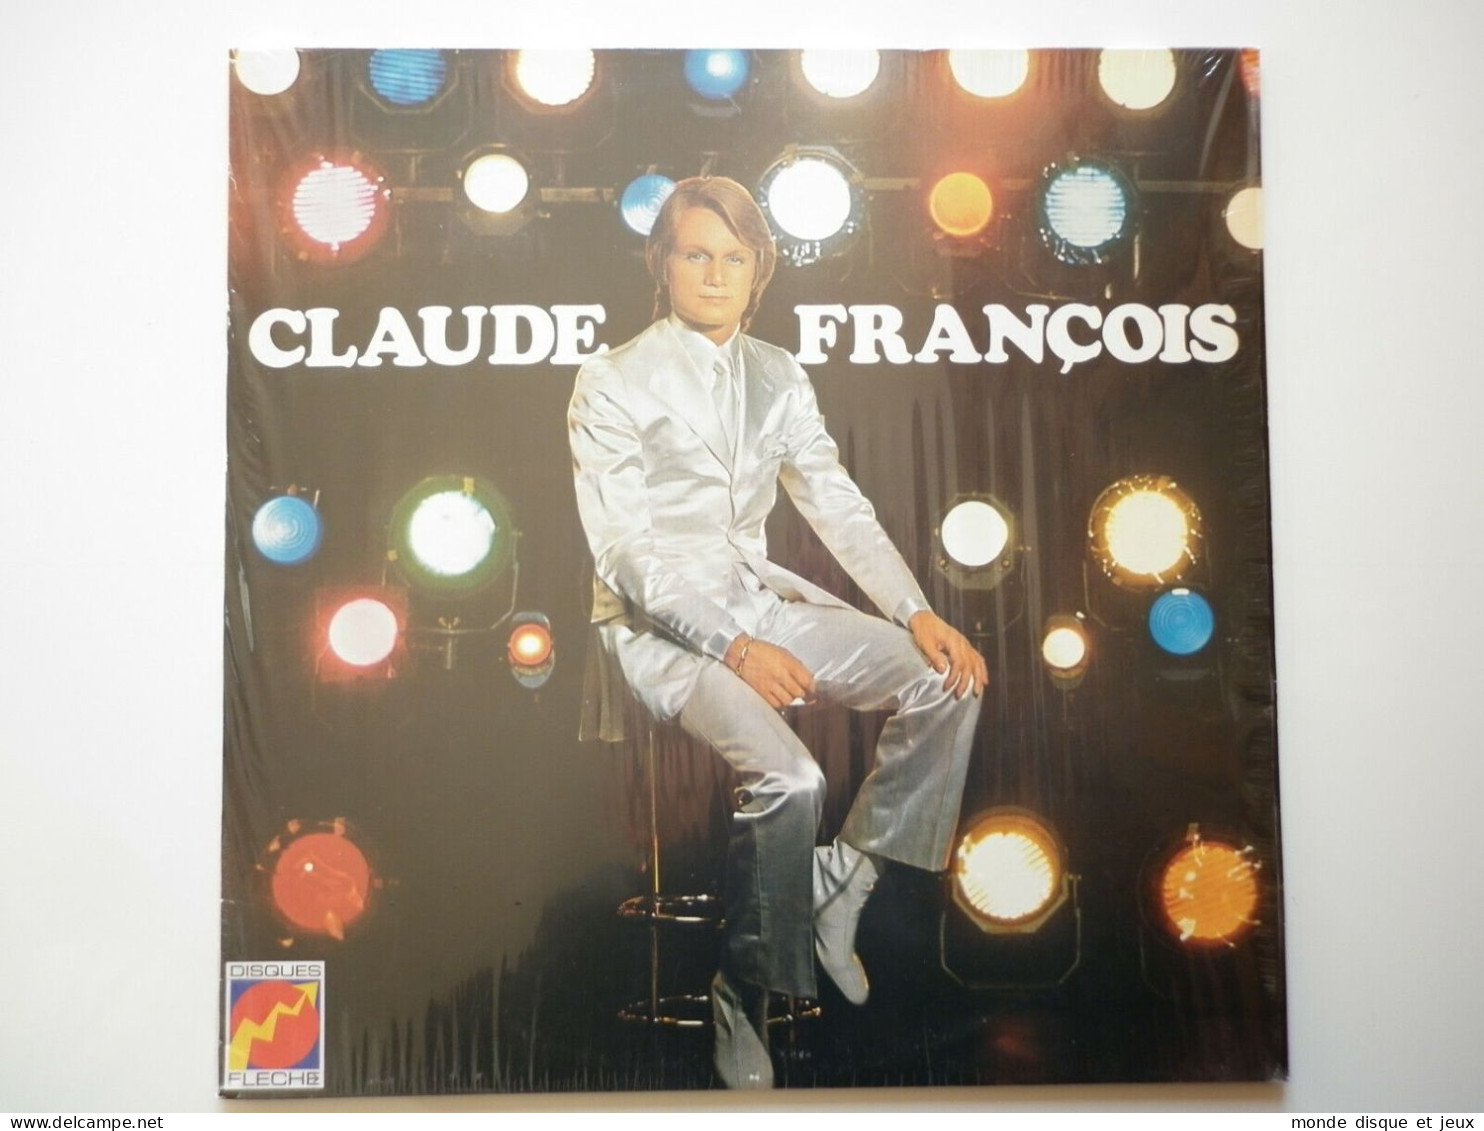 Claude François Album 33Tours Vinyle Le Lundi Au Soleil - Autres - Musique Française